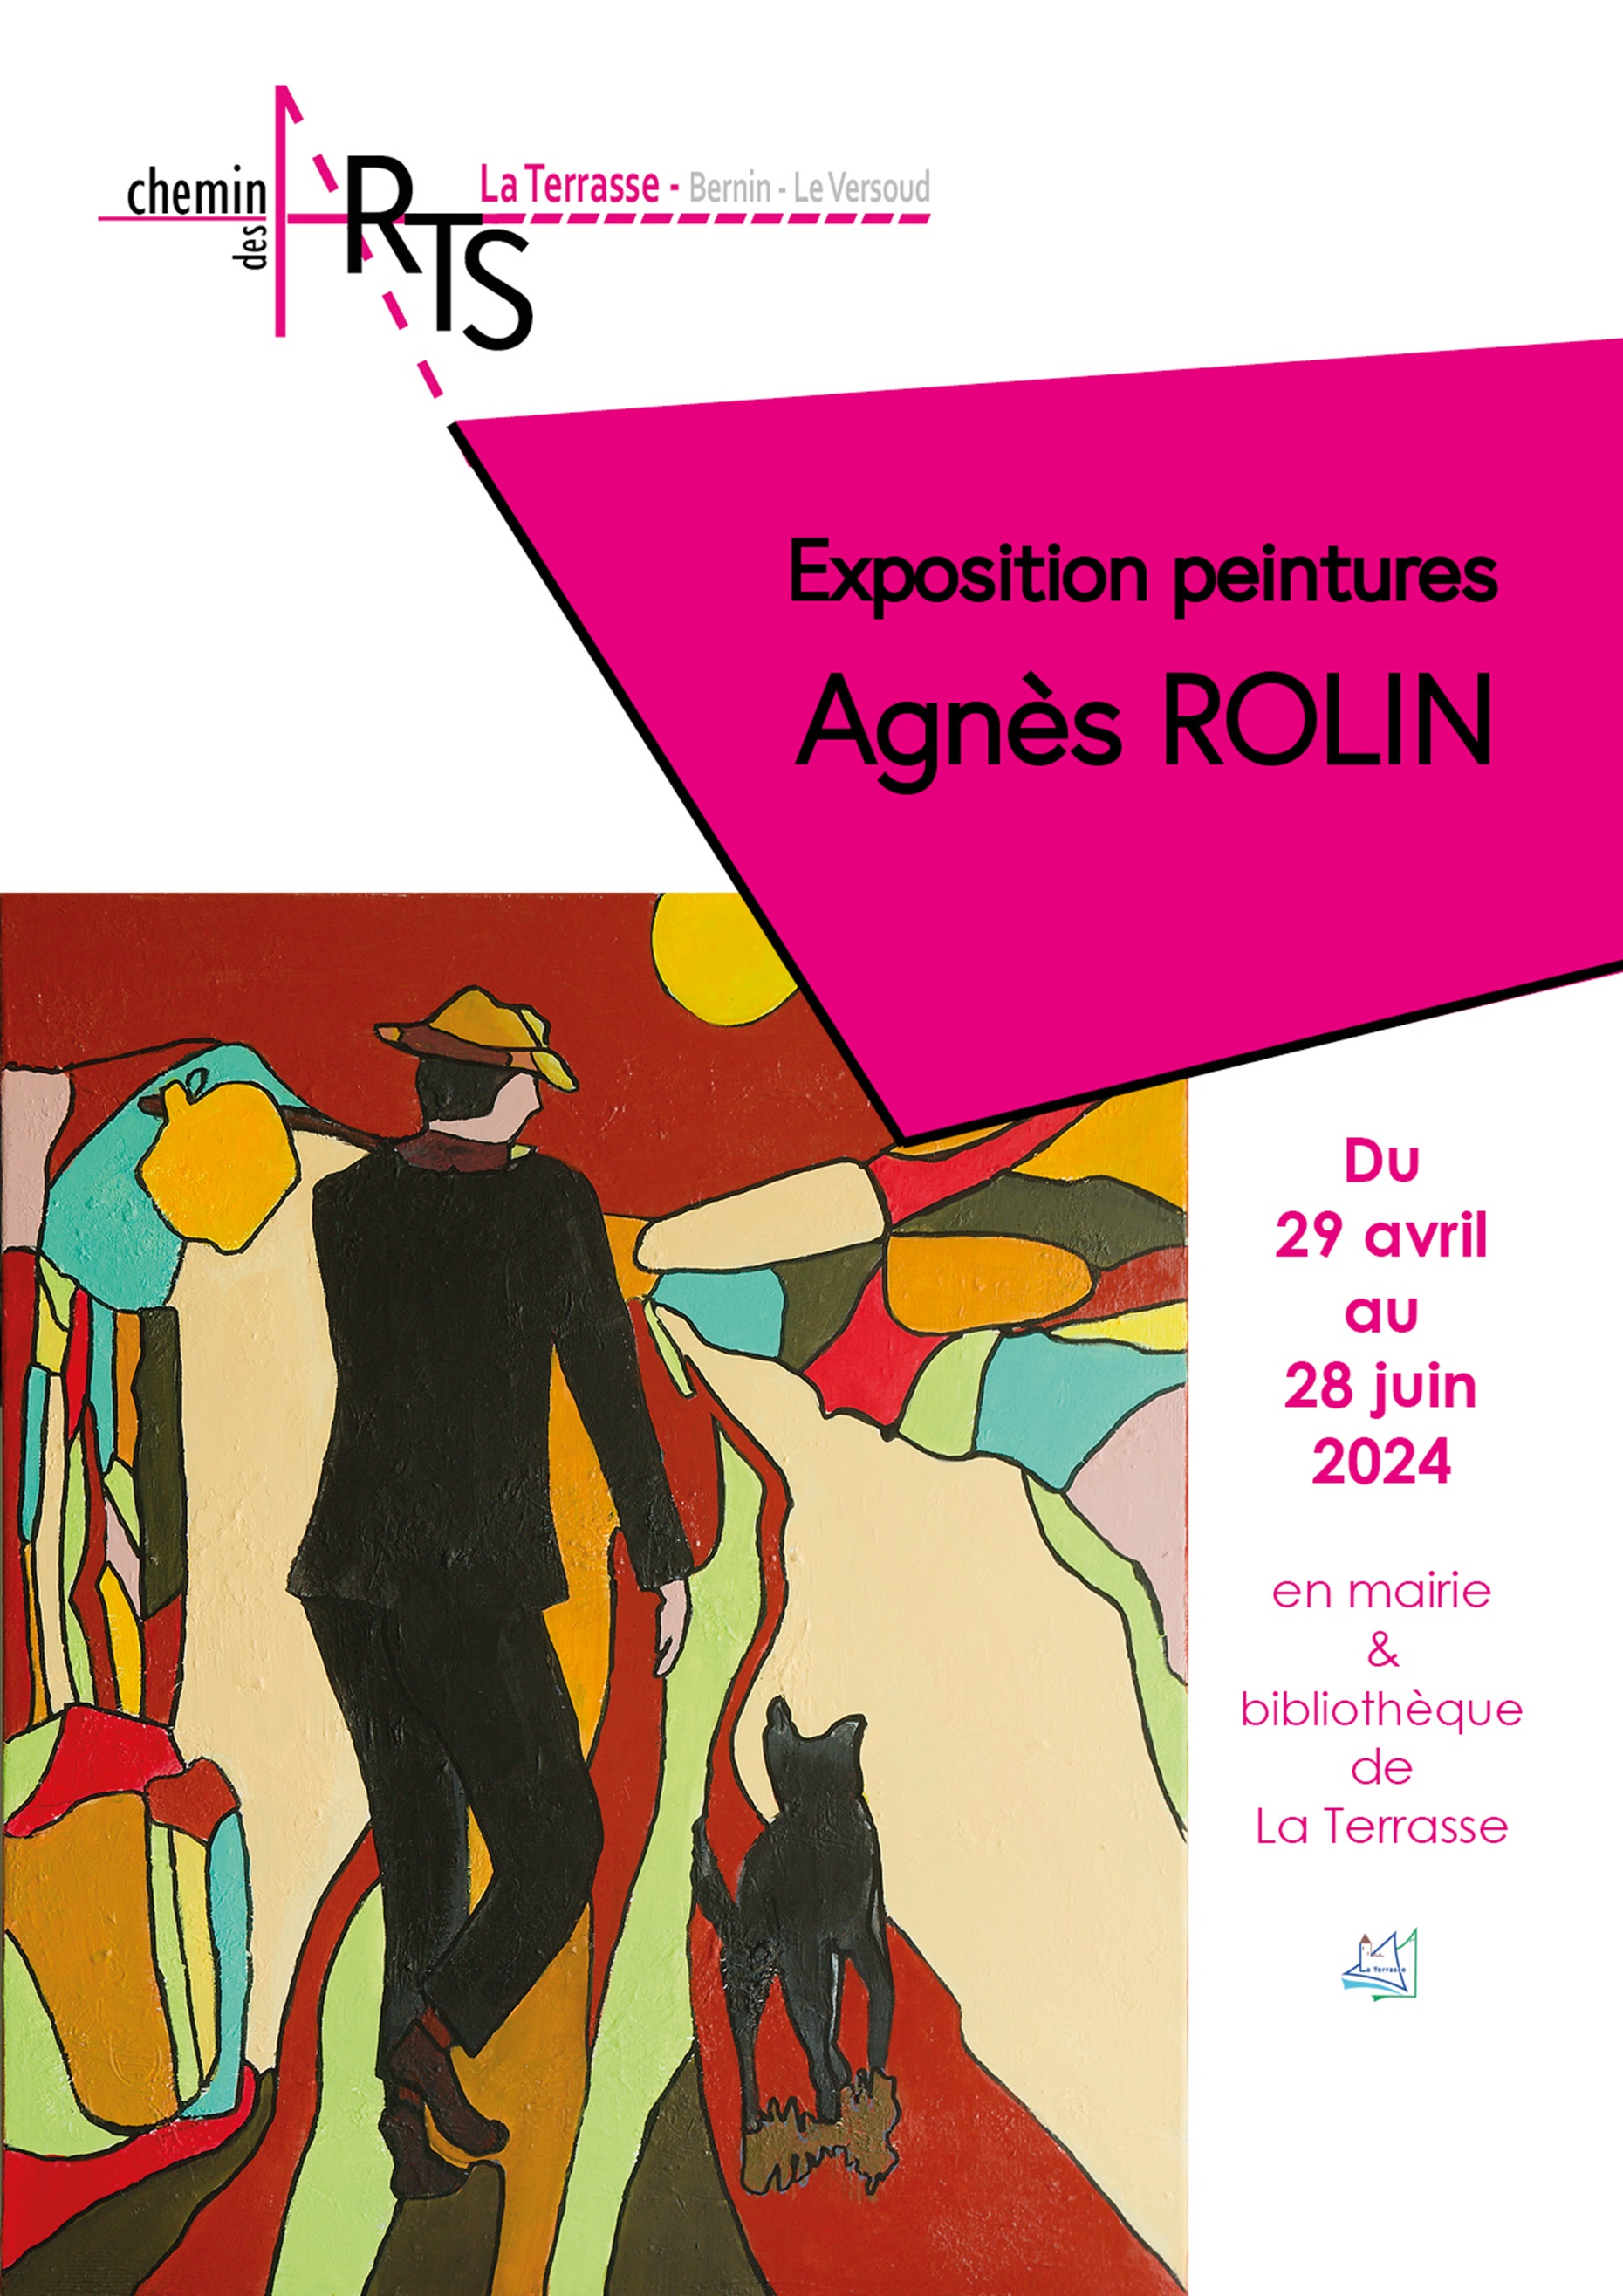 Exposition Agnès ROLIN du 29 avril au 28 juin 2024 - Mairie de La Terrasse